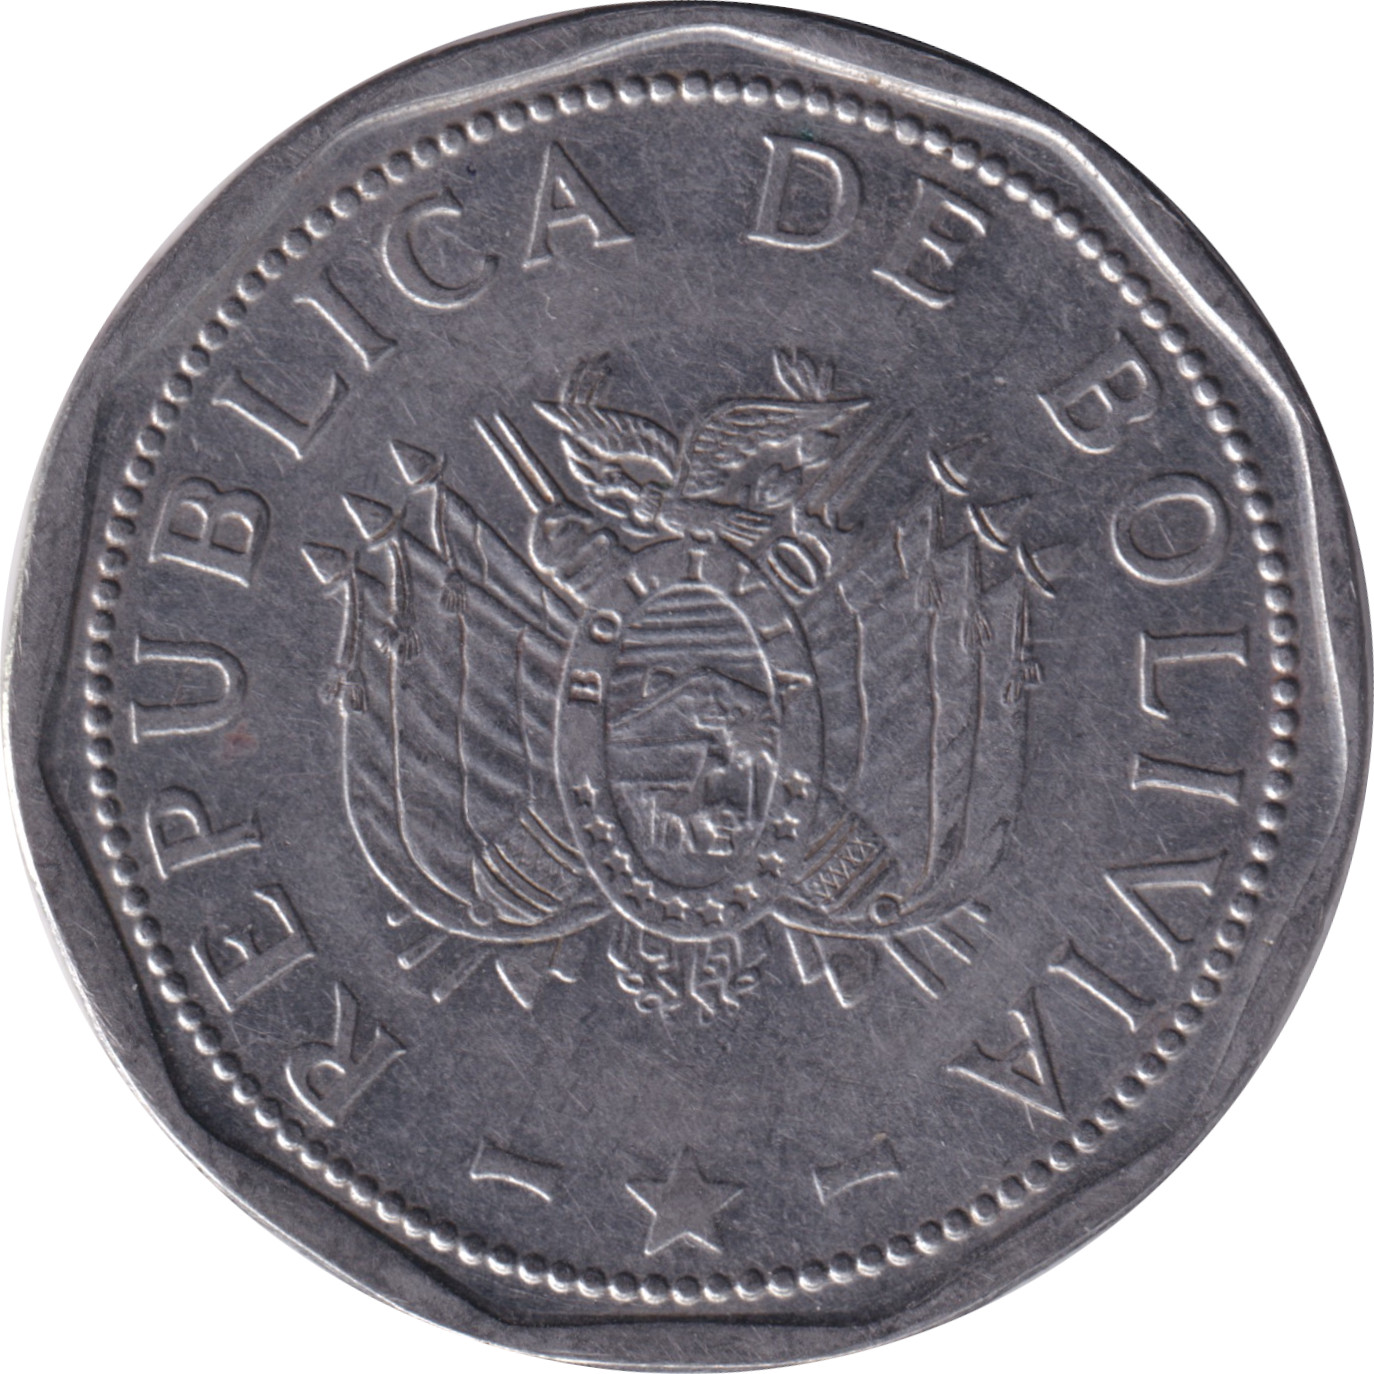 2 bolivianos - République de Bolivie